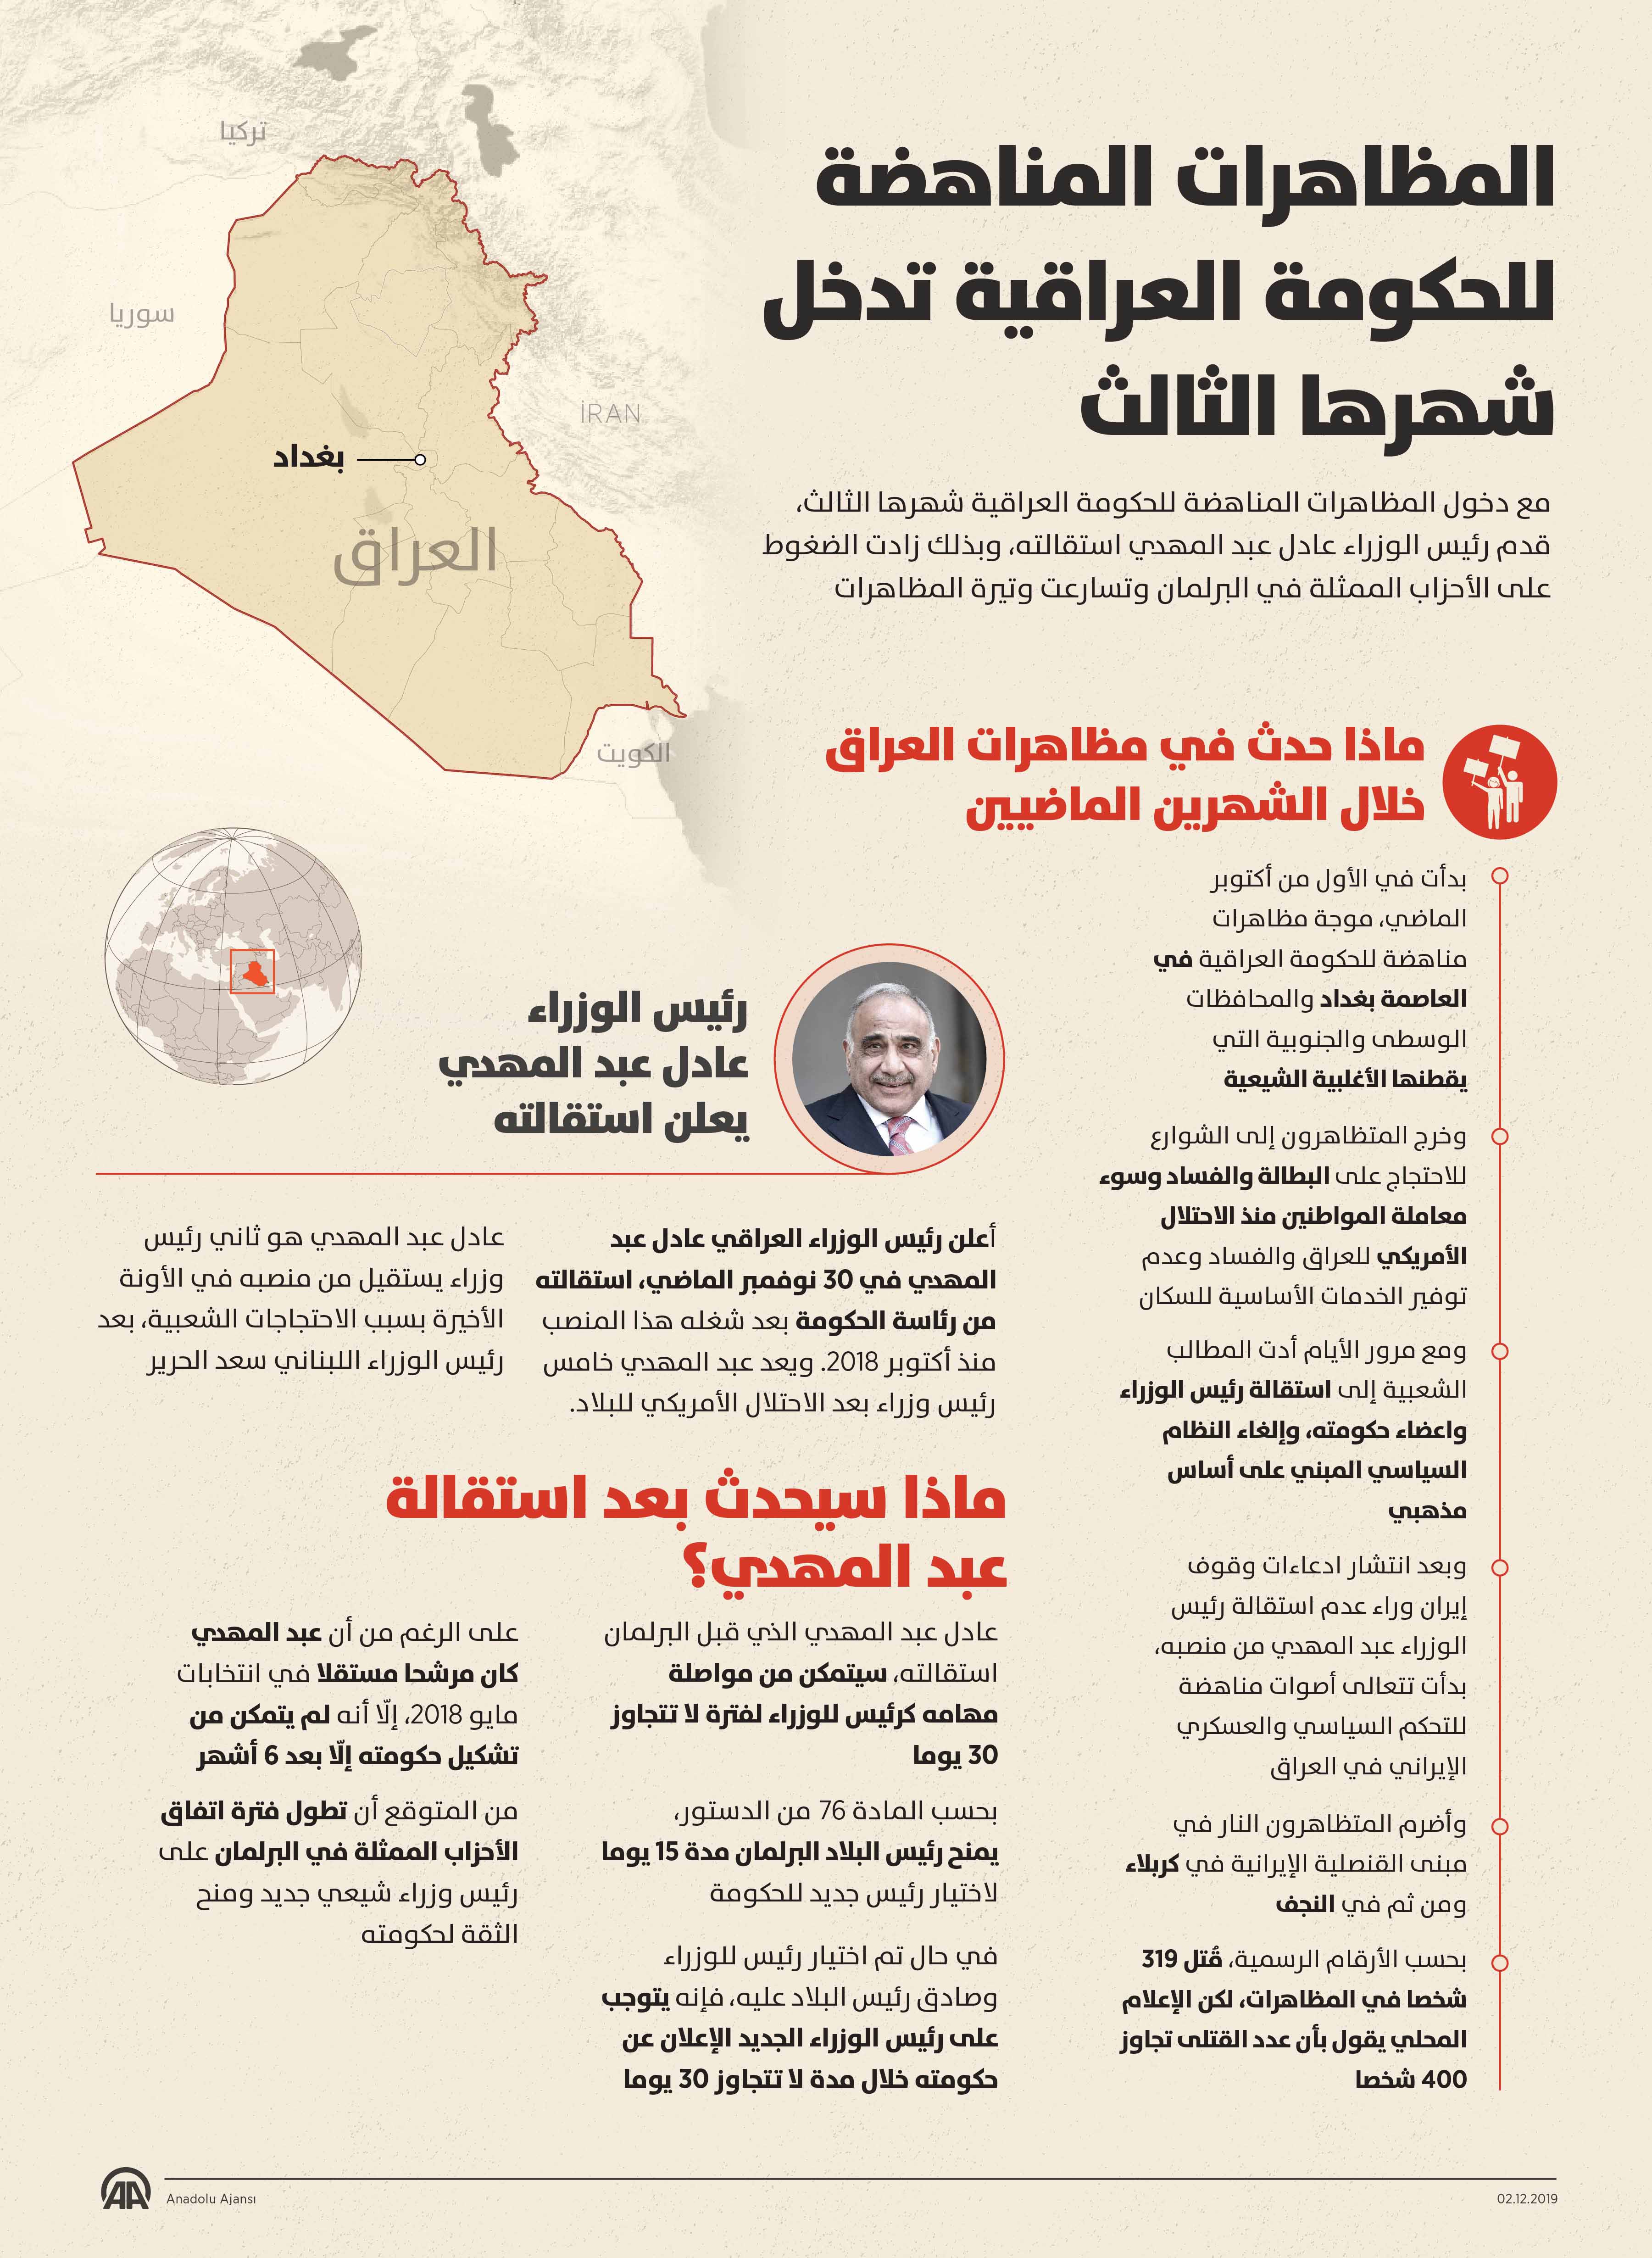 المظاهرات المناهضة للحكومة العراقية تدخل شهرها الثالث